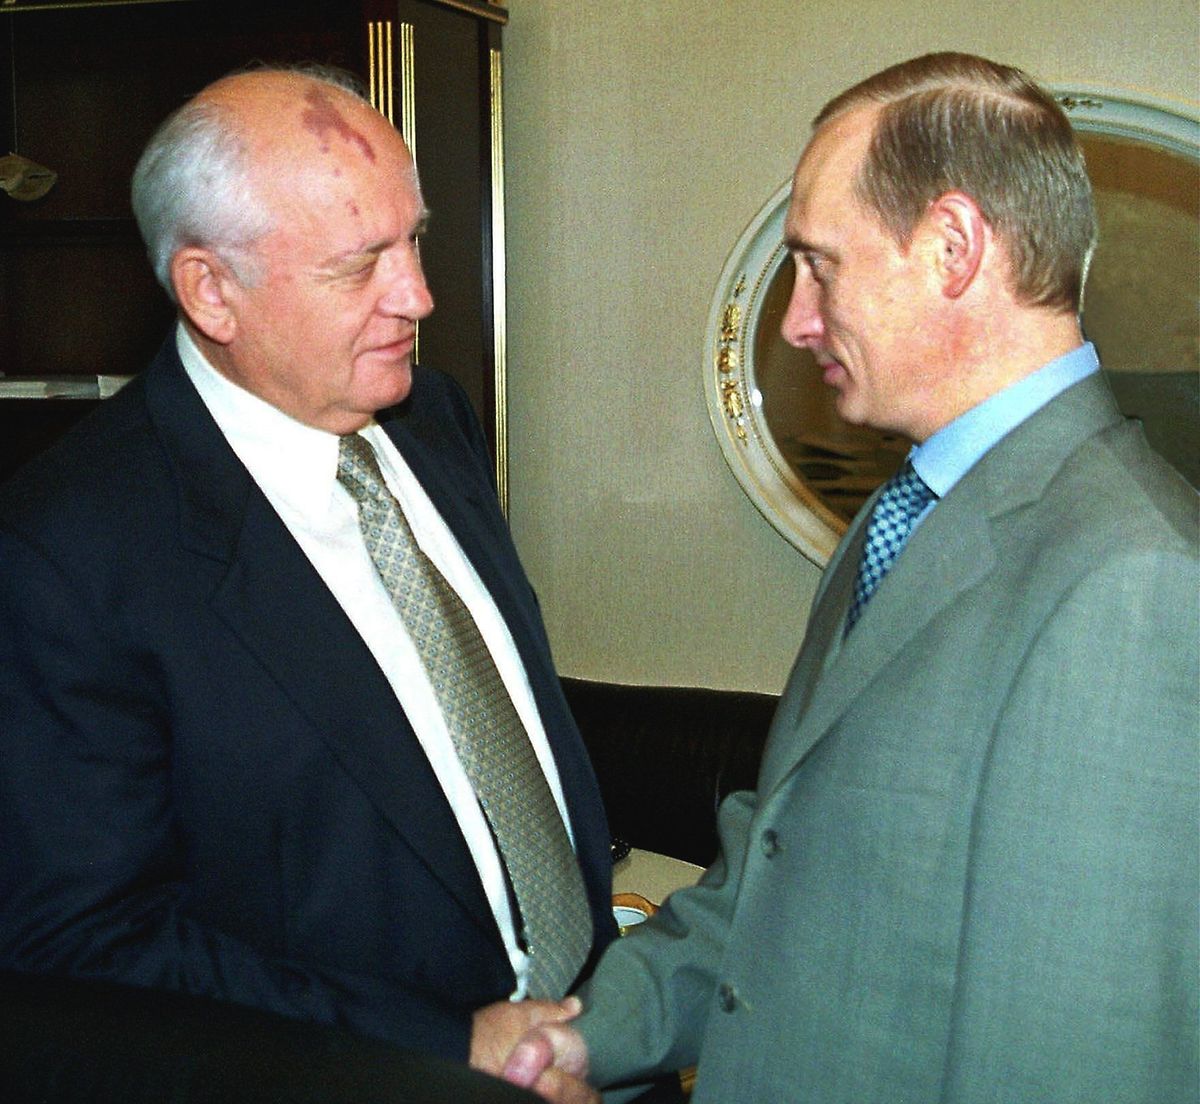 Gorbatschow kritisierte mehrfach die Politik des aktuellen Präsidenten Putin. Das Bild zeigt die beiden Politiker im Jahr 2000.